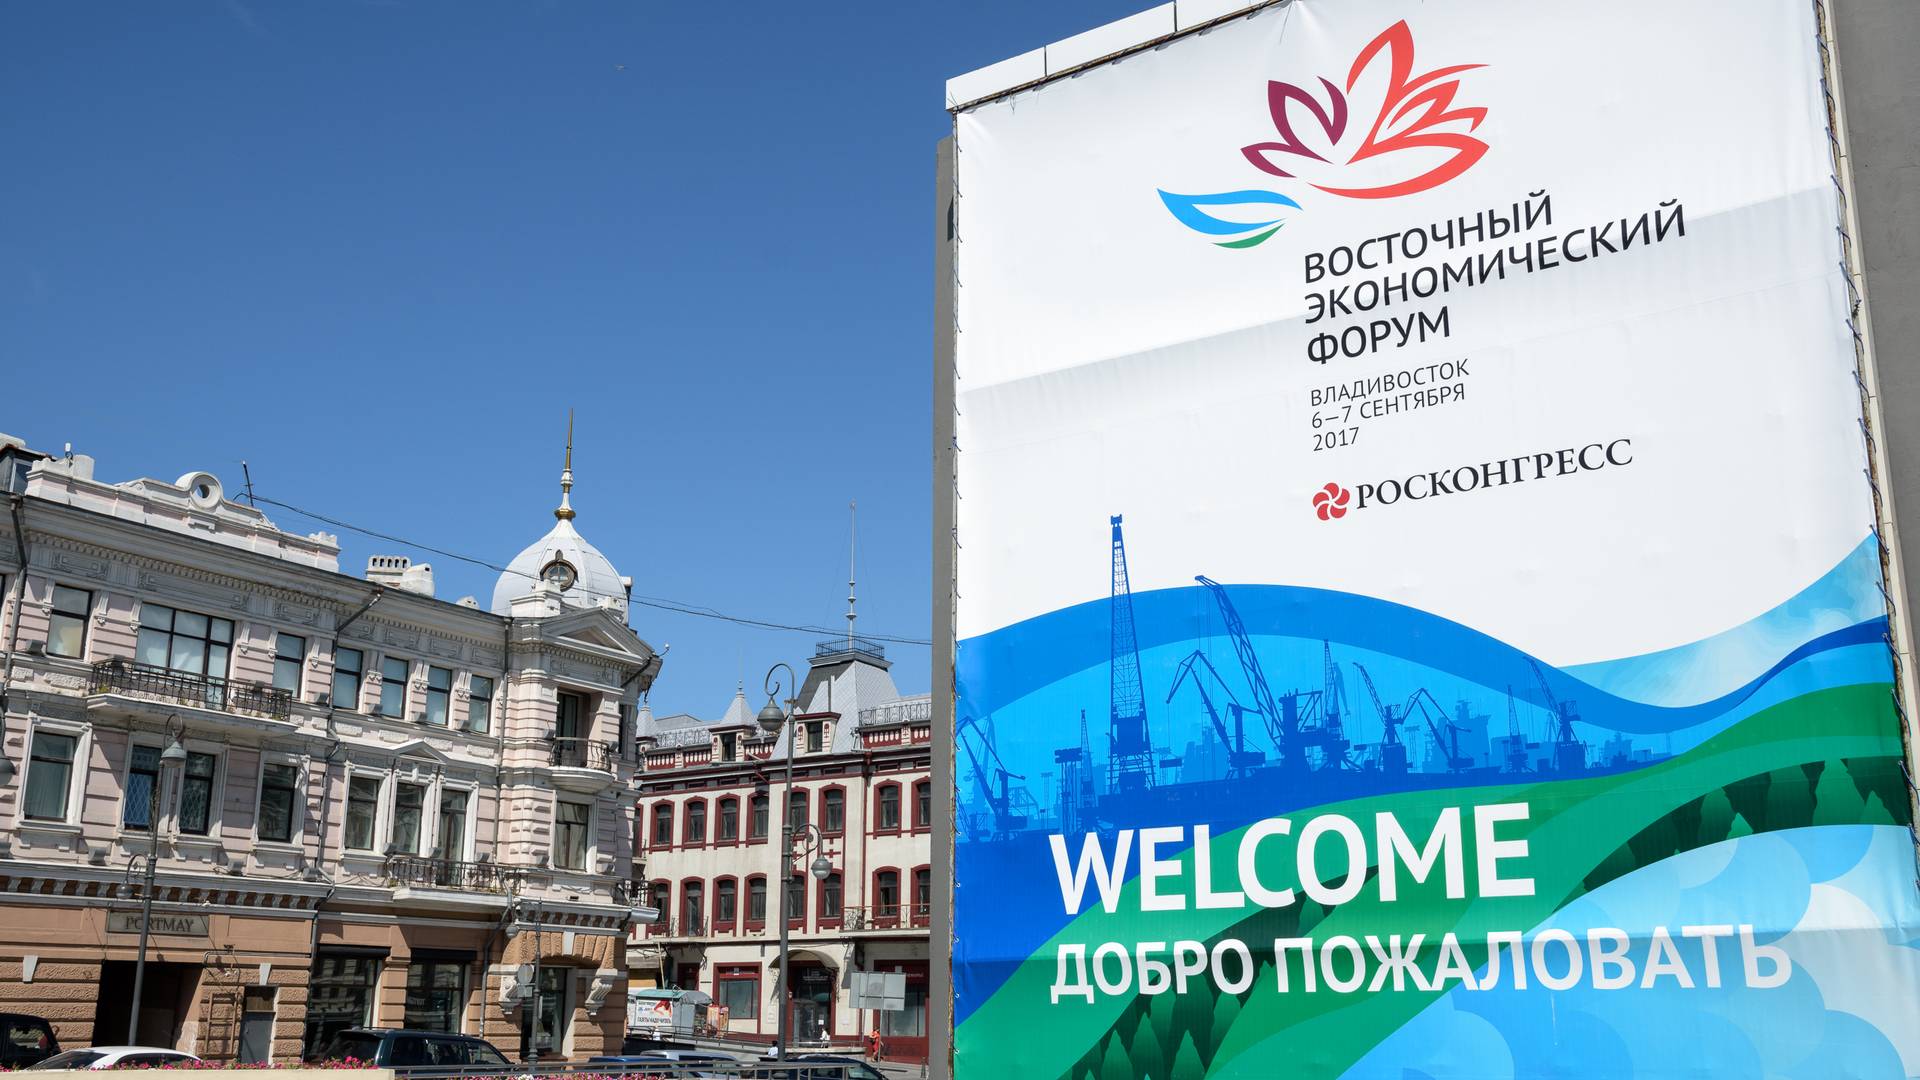 Символика Восточного экономического форума, Владивосток, Россия